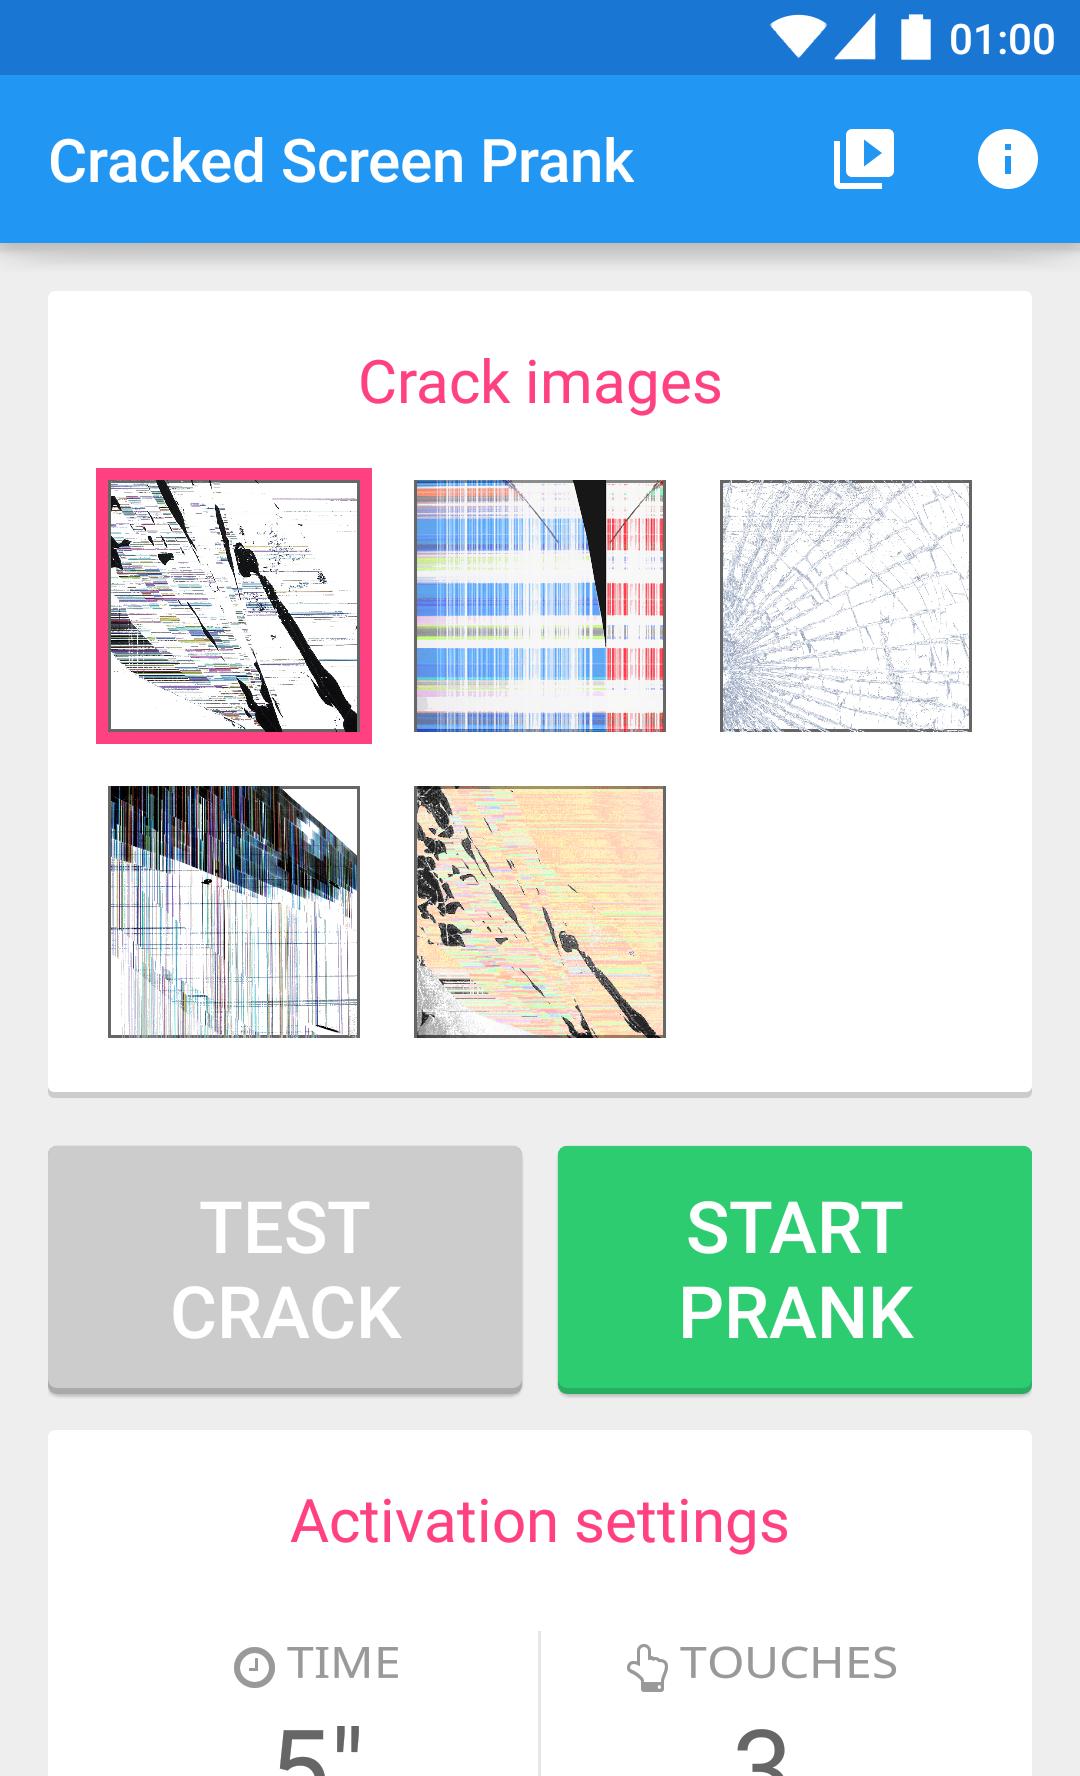 Start crack